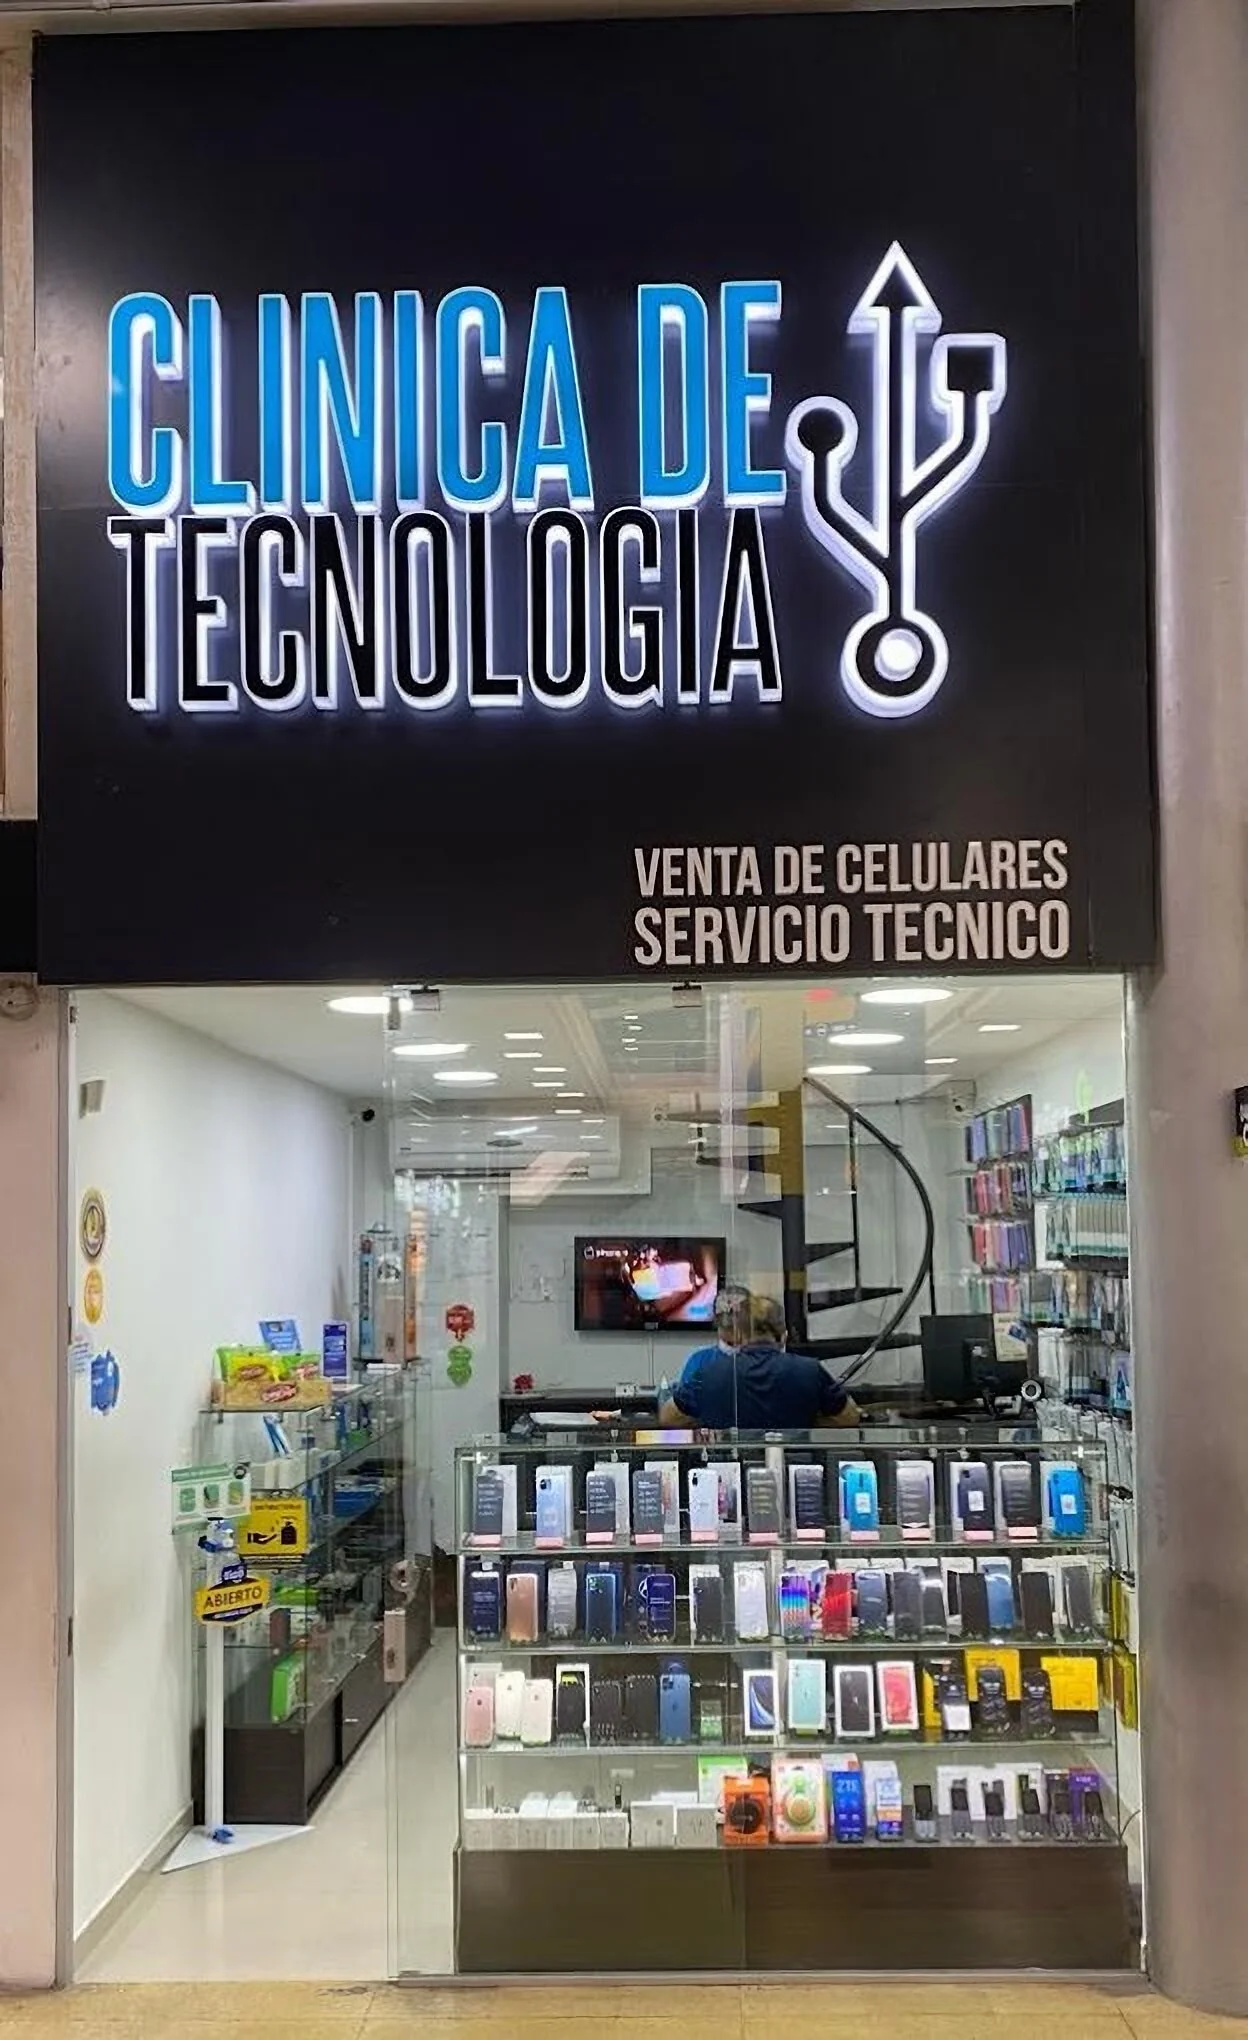 Celulares-clinica-de-tecnologia-13784